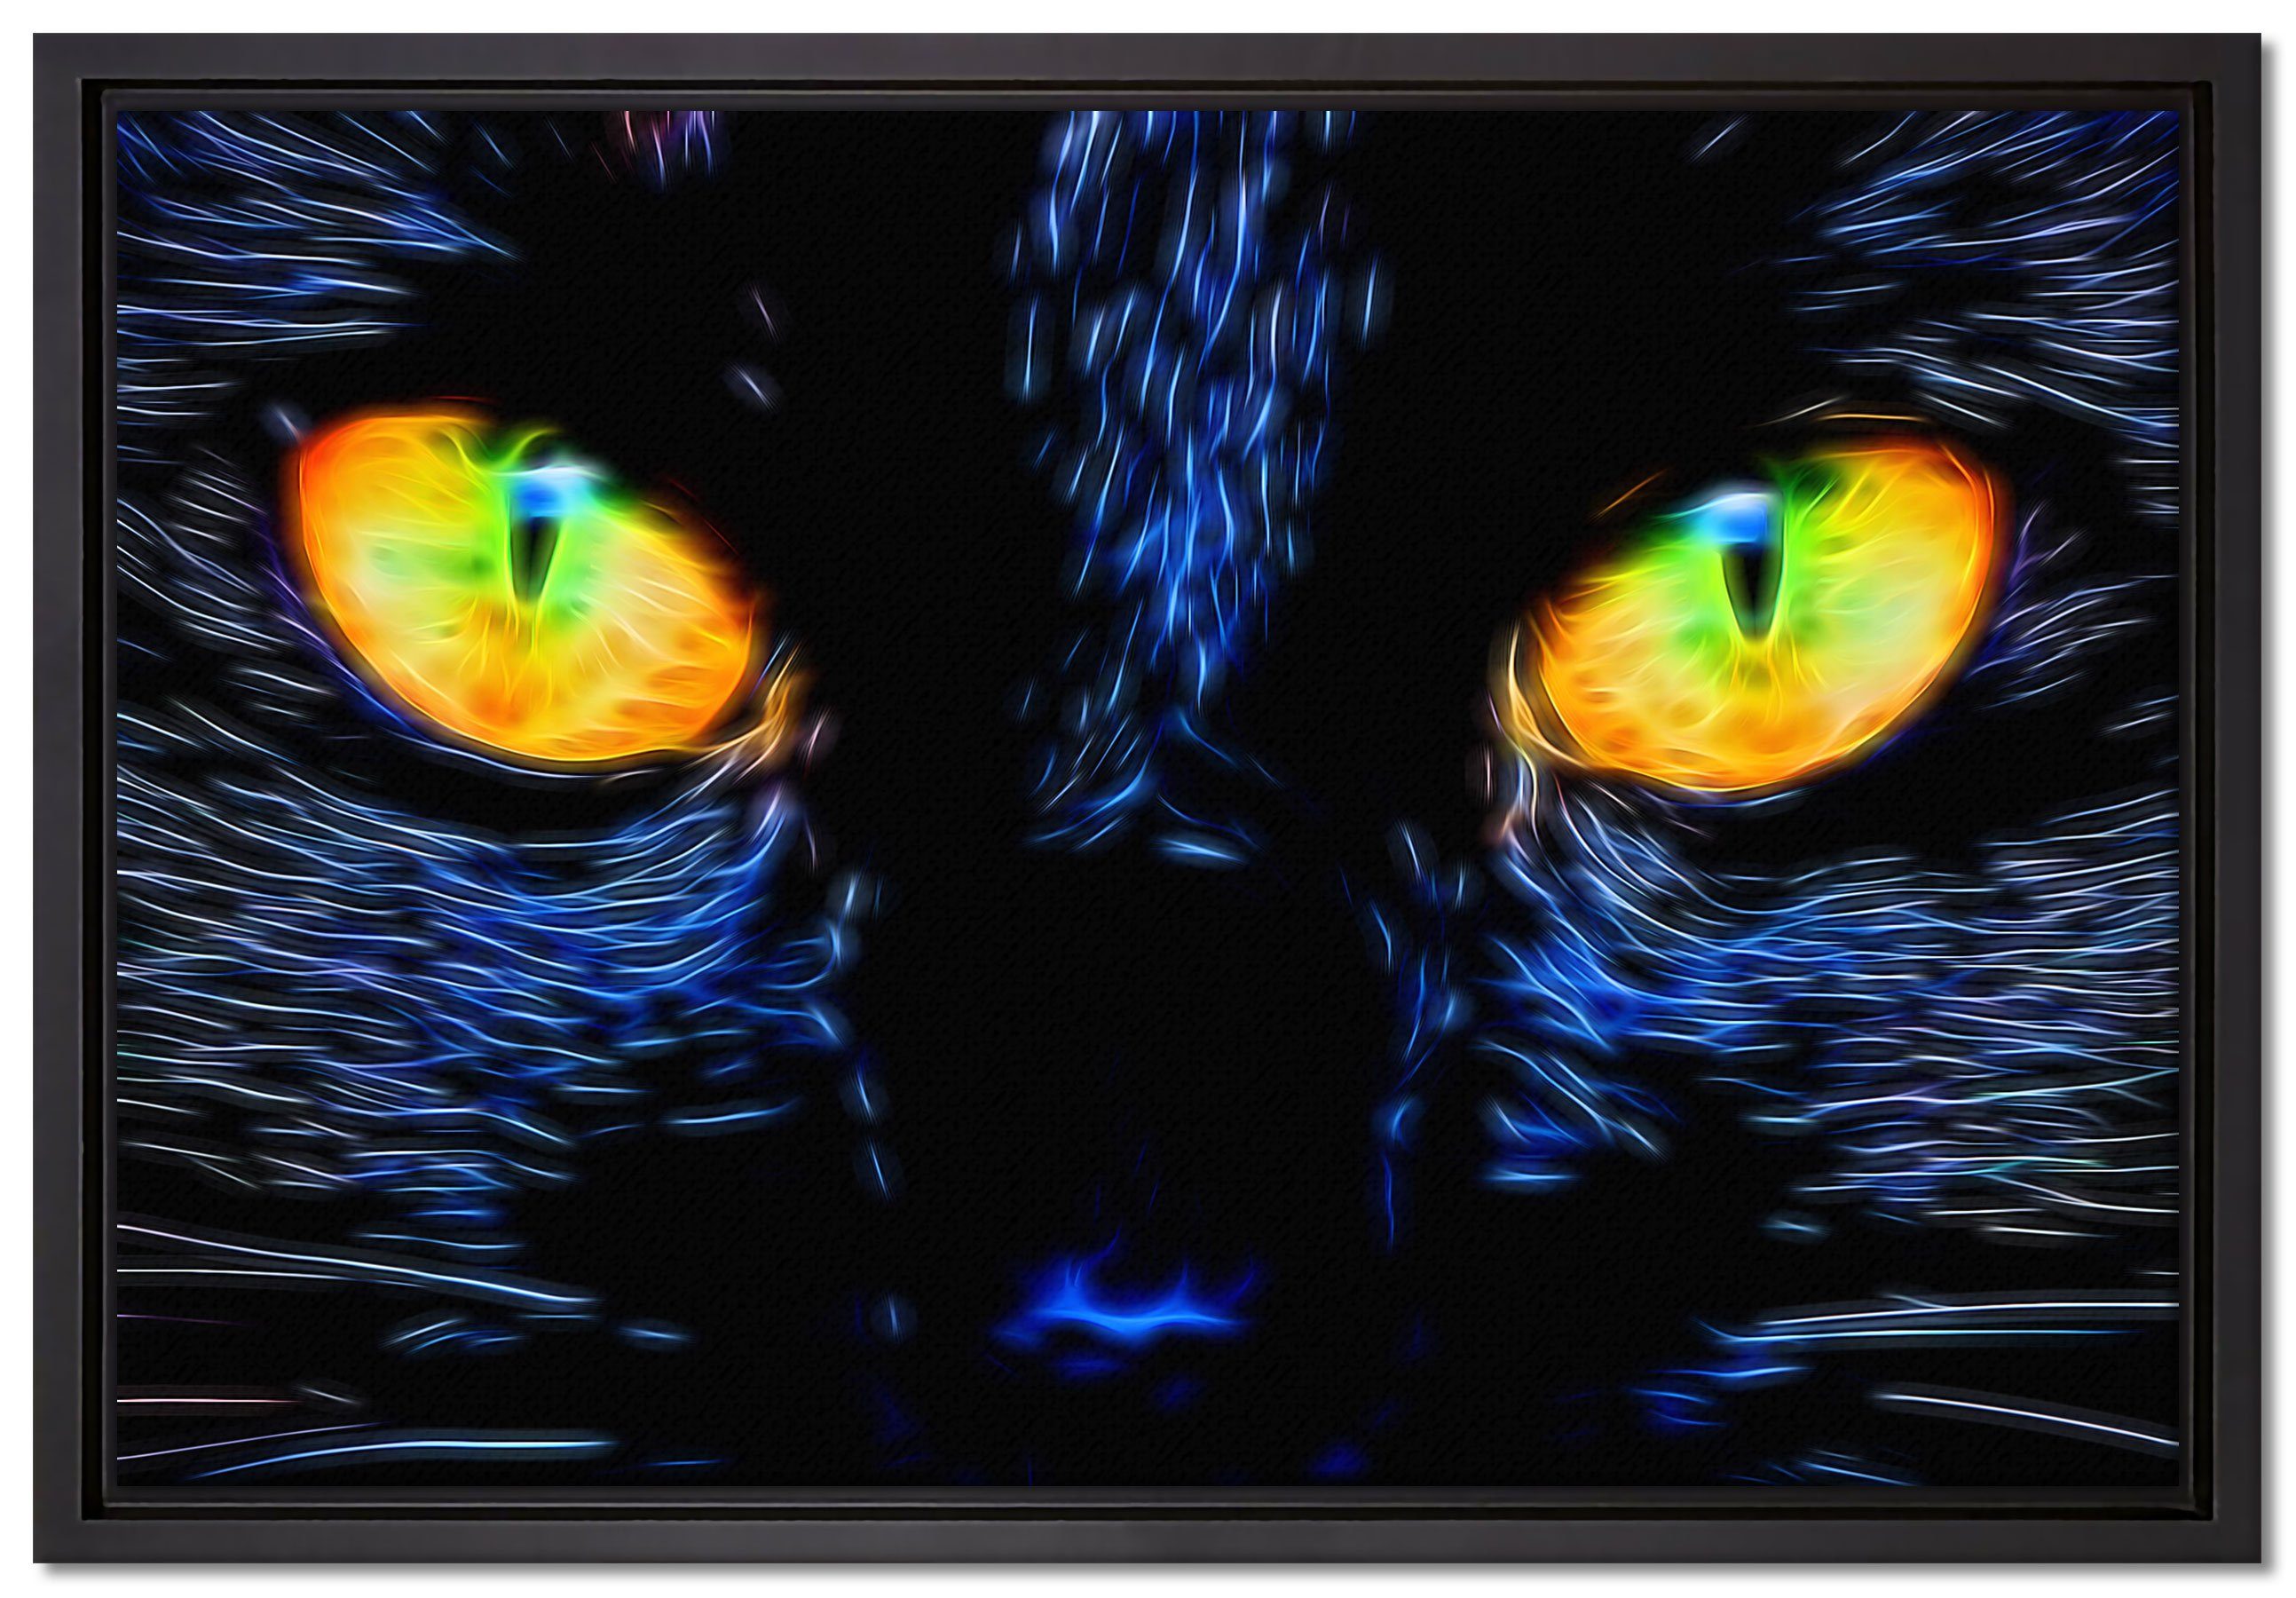 Pixxprint Leinwandbild Katze mit Augen, Wanddekoration (1 St), Leinwandbild fertig bespannt, in einem Schattenfugen-Bilderrahmen gefasst, inkl. Zackenaufhänger